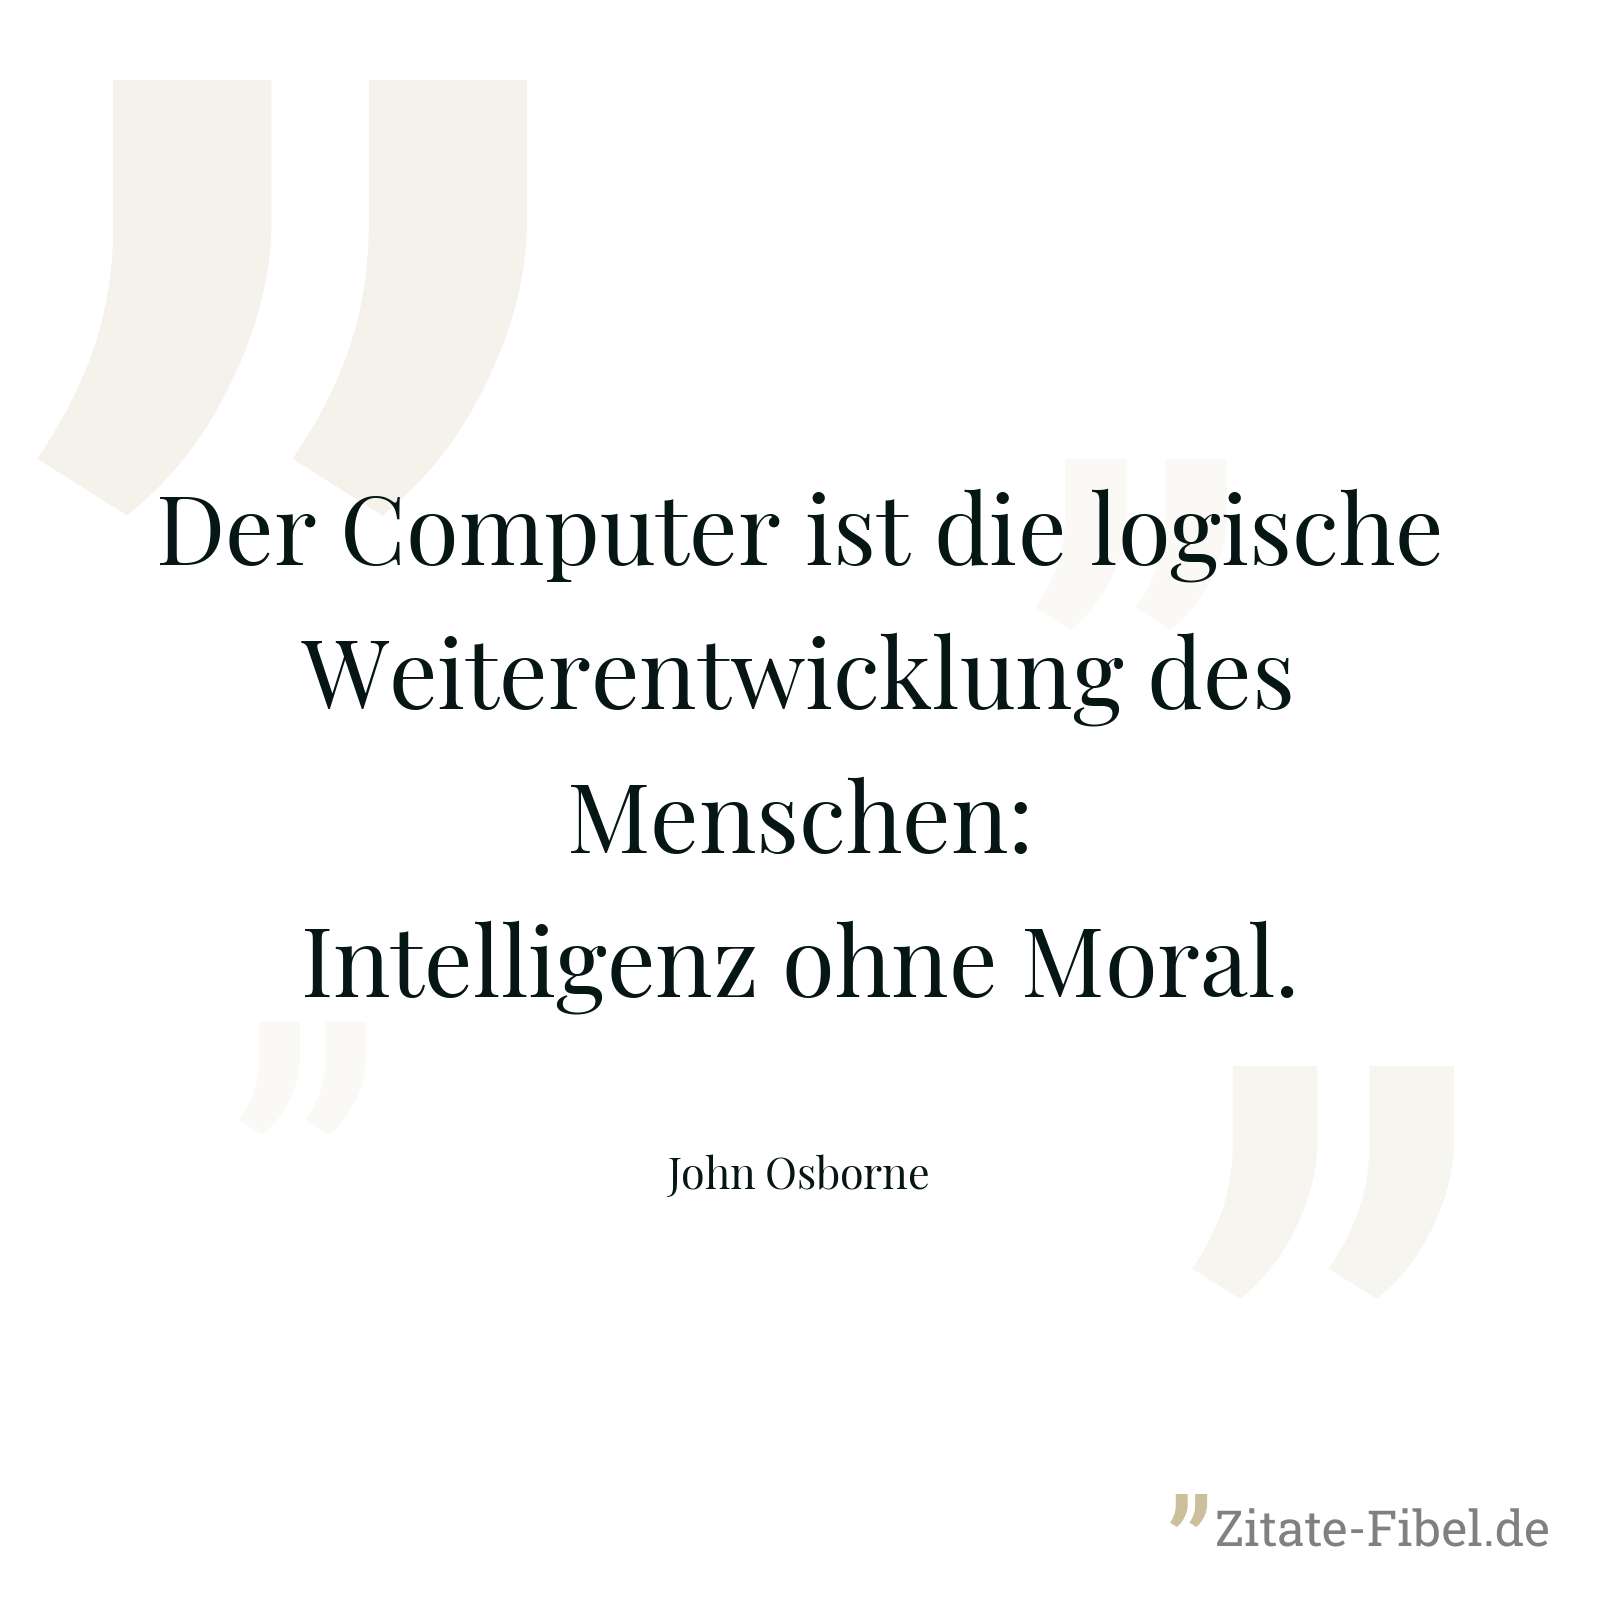 Der Computer ist die logische Weiterentwicklung des Menschen: Intelligenz ohne Moral. - John Osborne